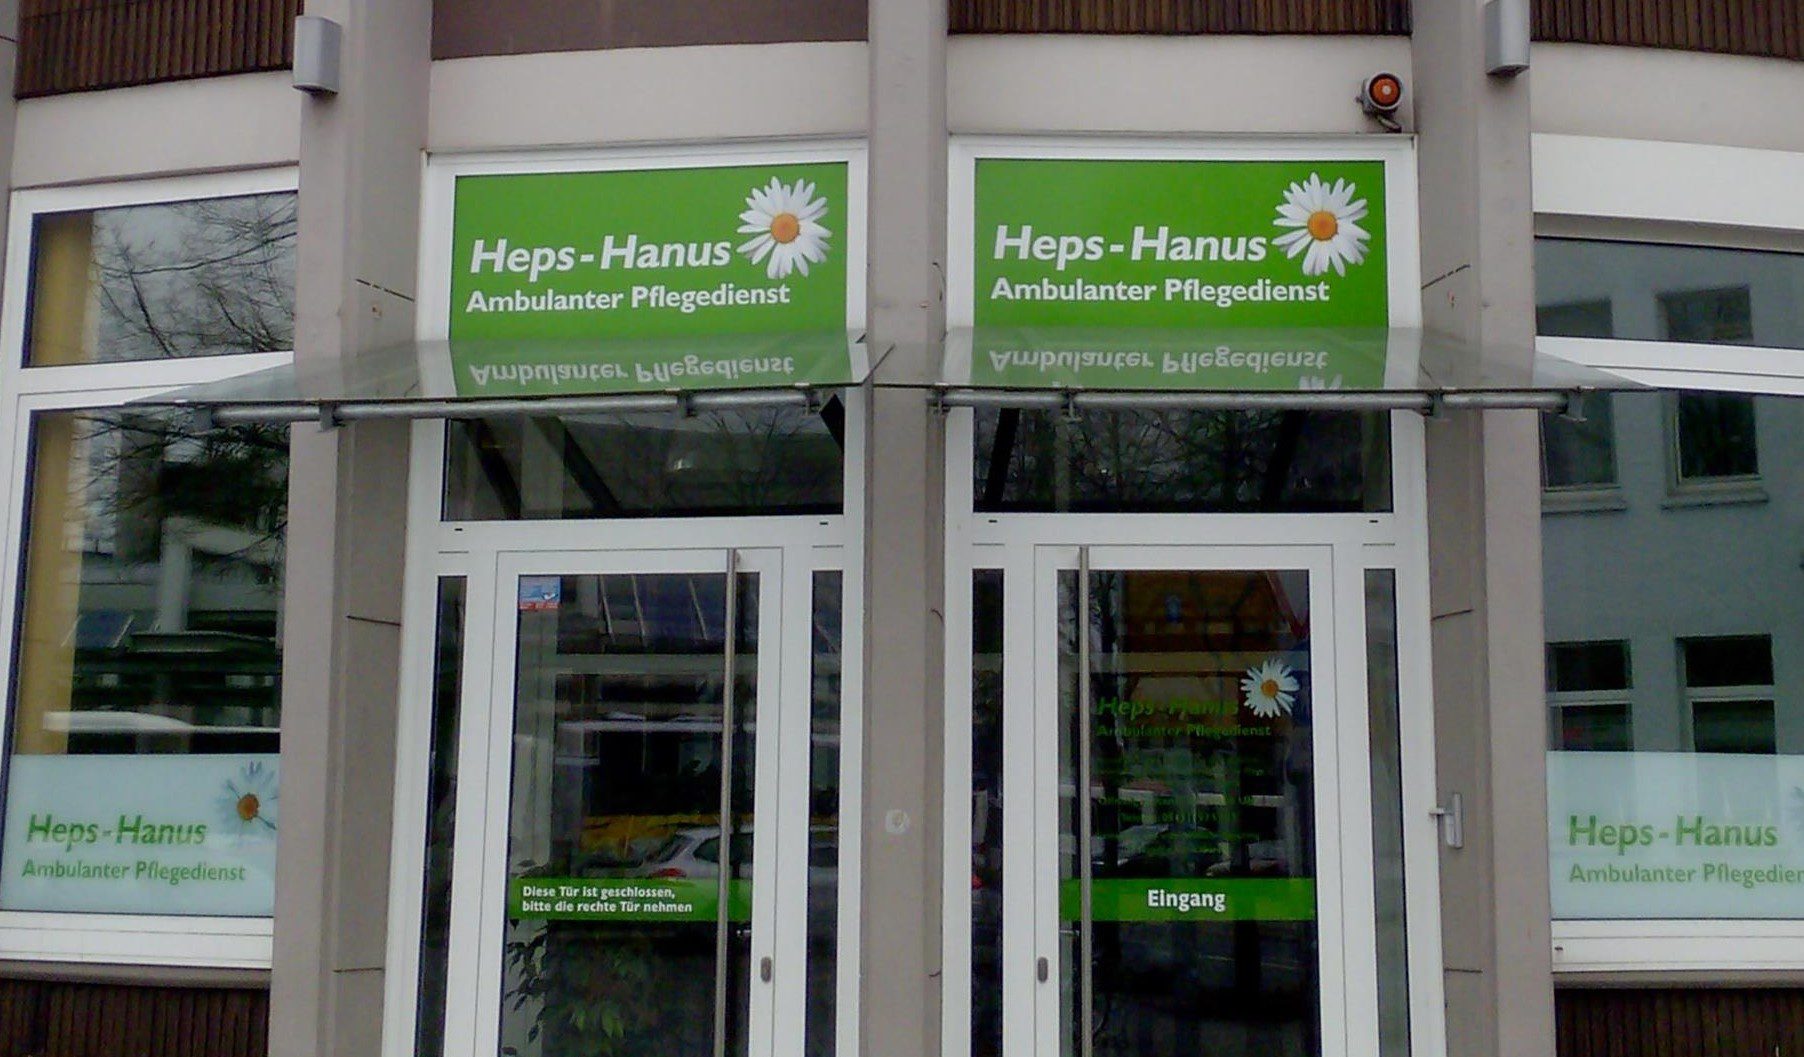 Heps-Hanus